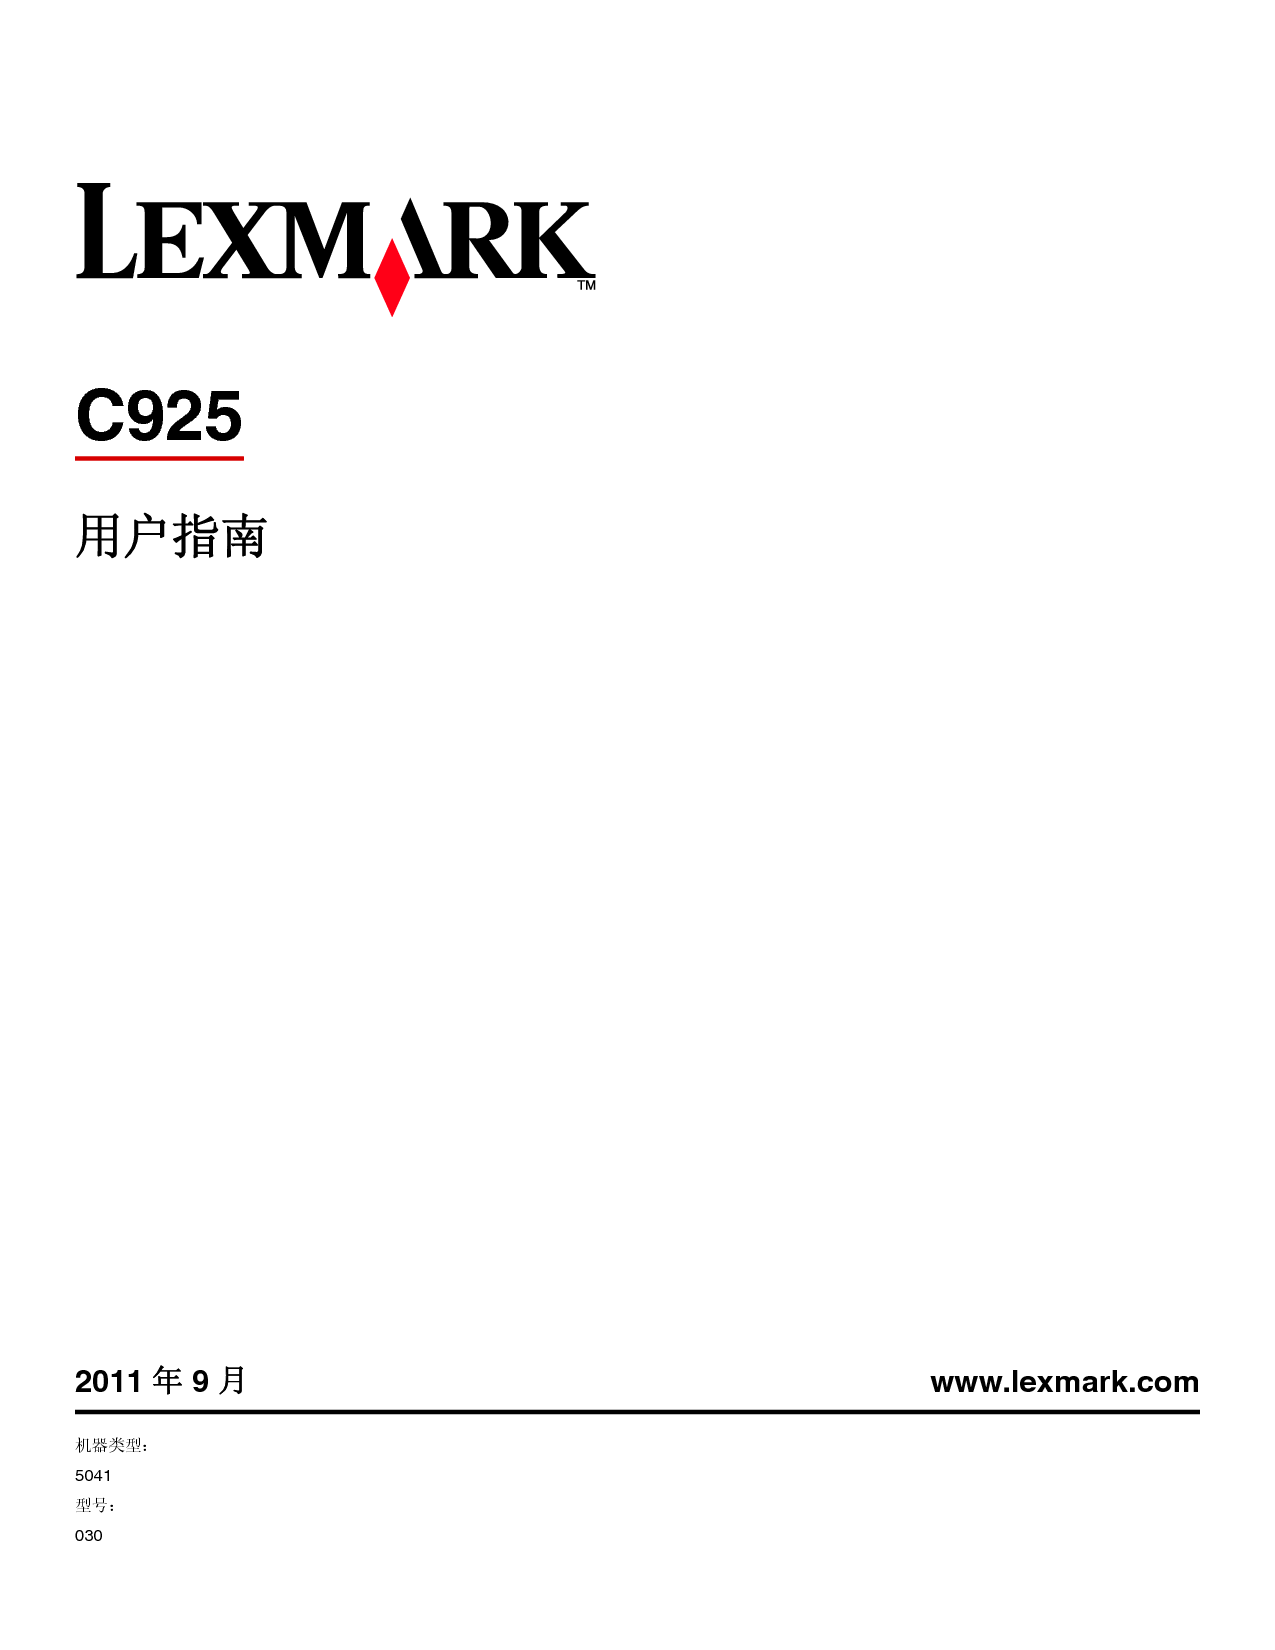 利盟 Lexmark C925 2011年9月版 用户指南 封面